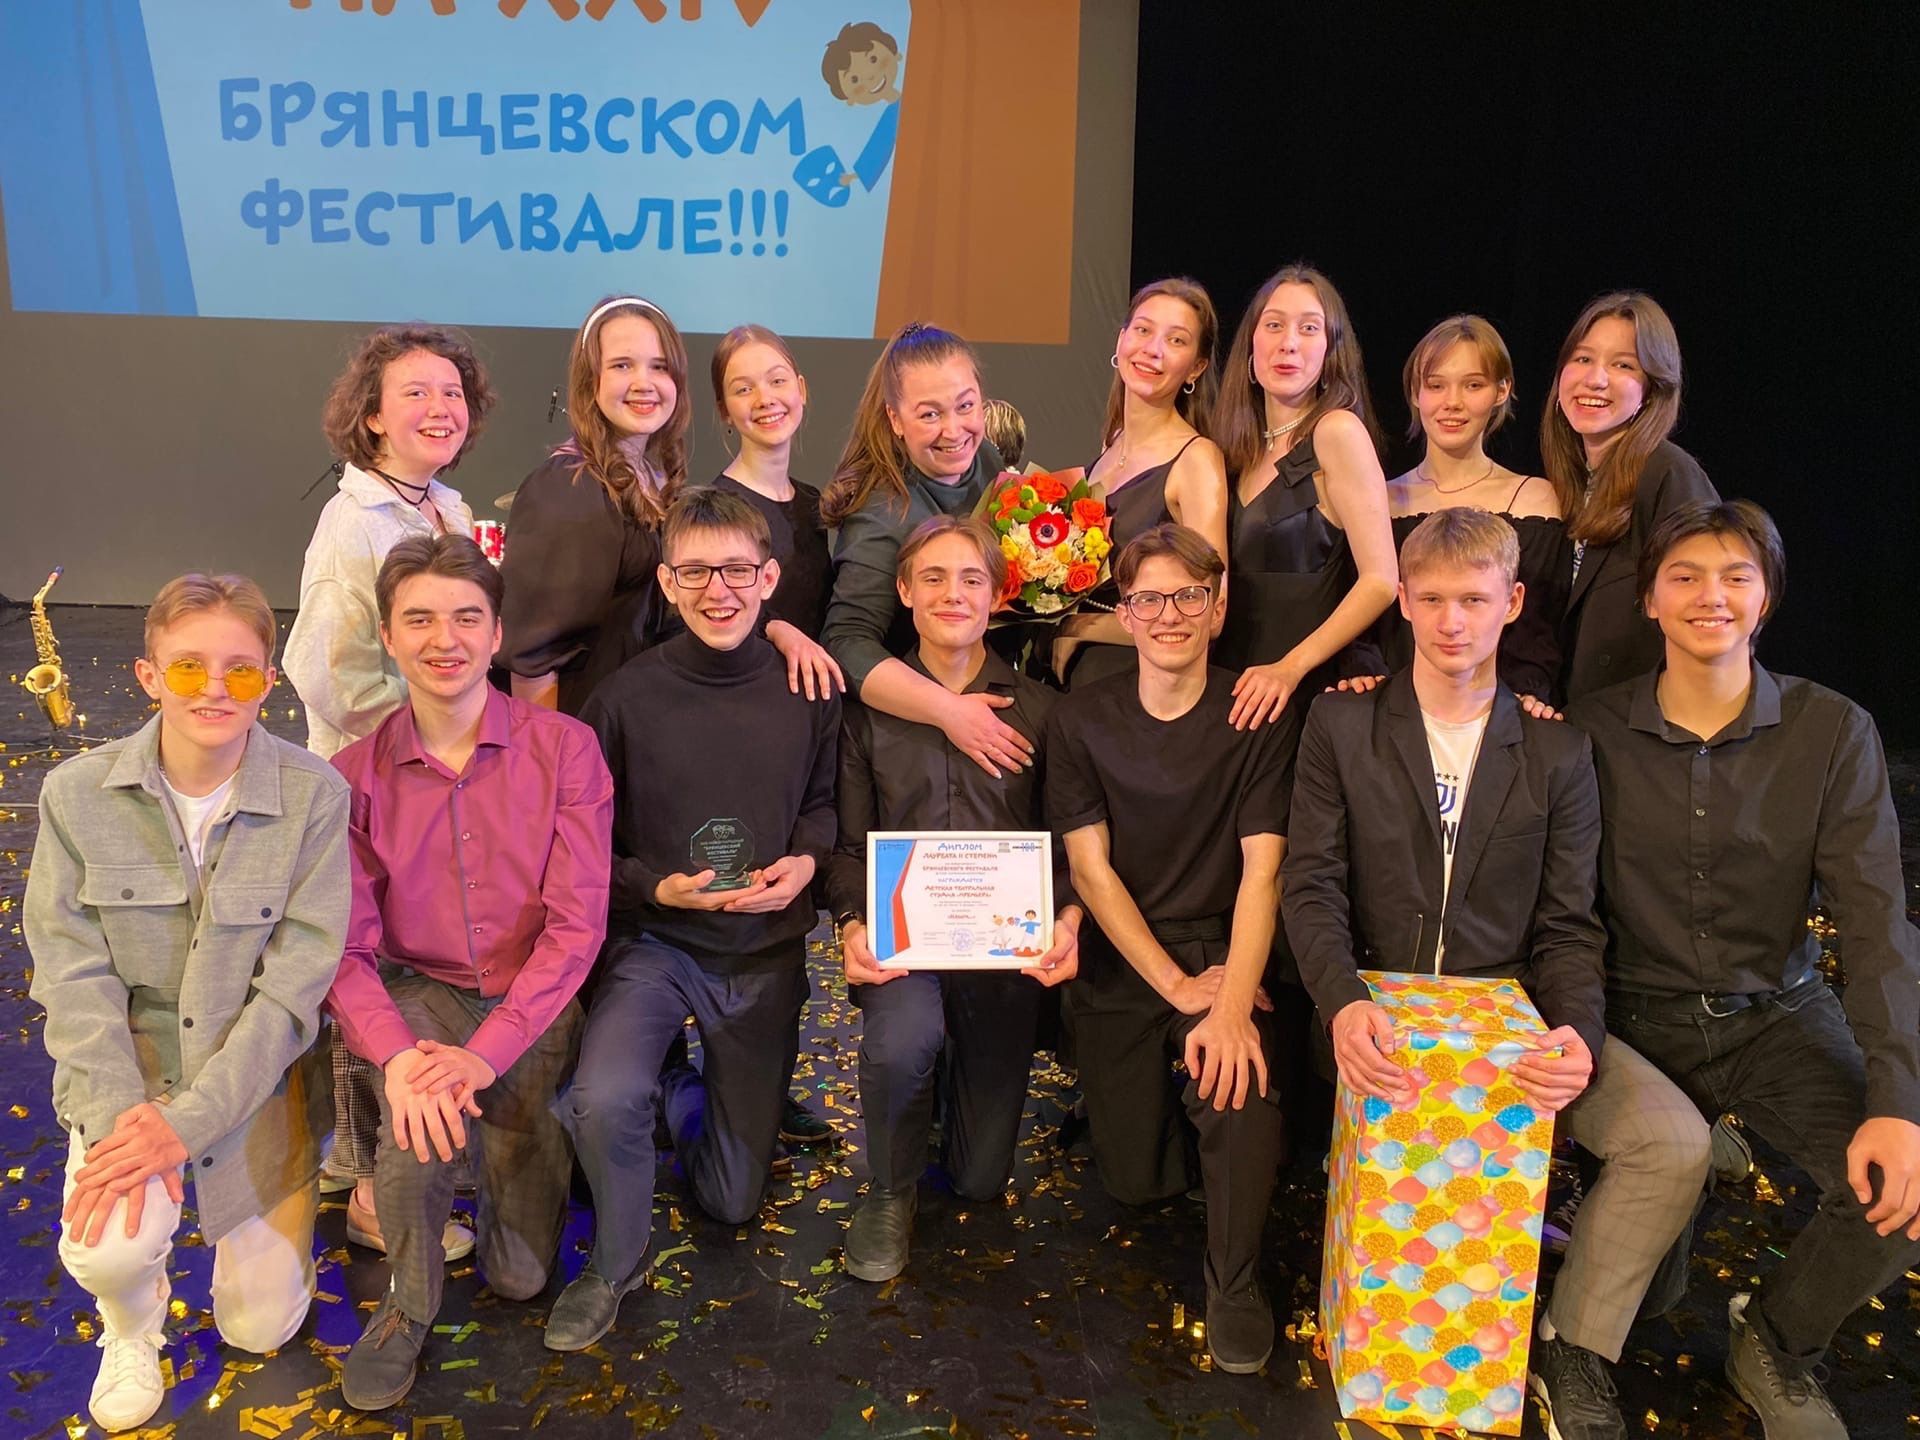 Тольяттинская «Премьера» стала лауреатом XXIII Международного Брянцевского фестиваля